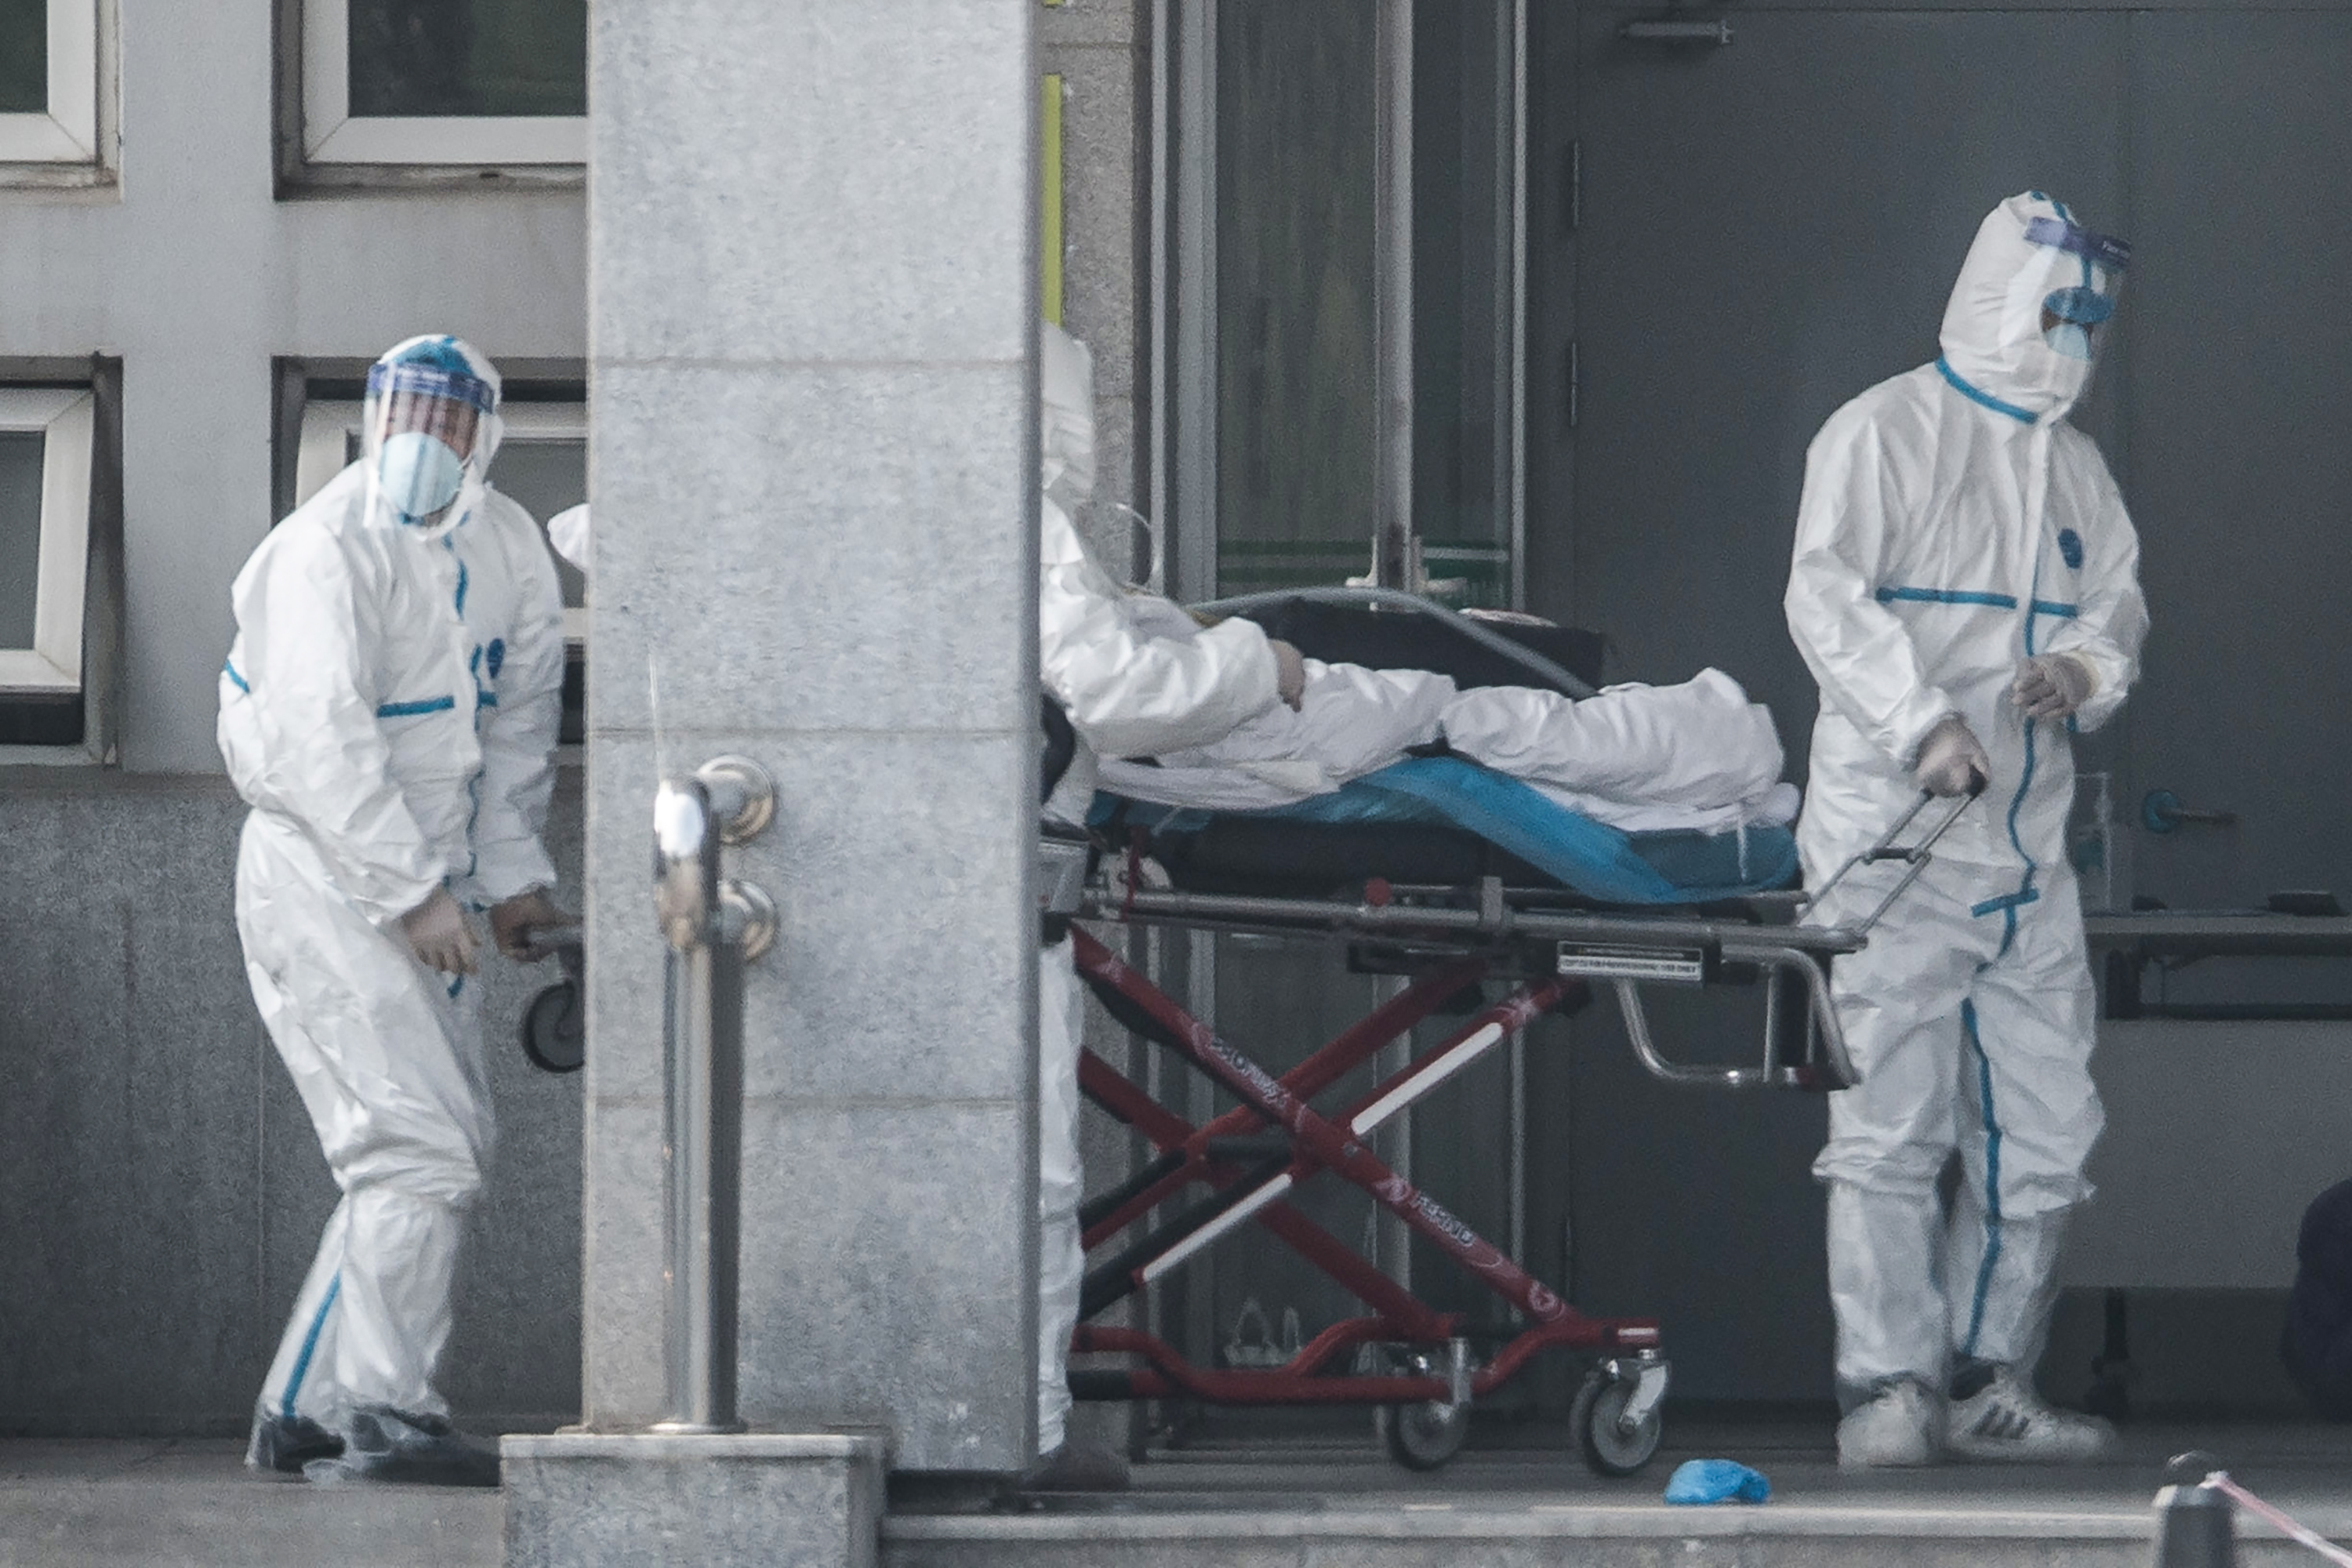 El virus detectado en China se contagia entre humanos, según experto del gobierno. (Foto Prensa Libre: AFP)